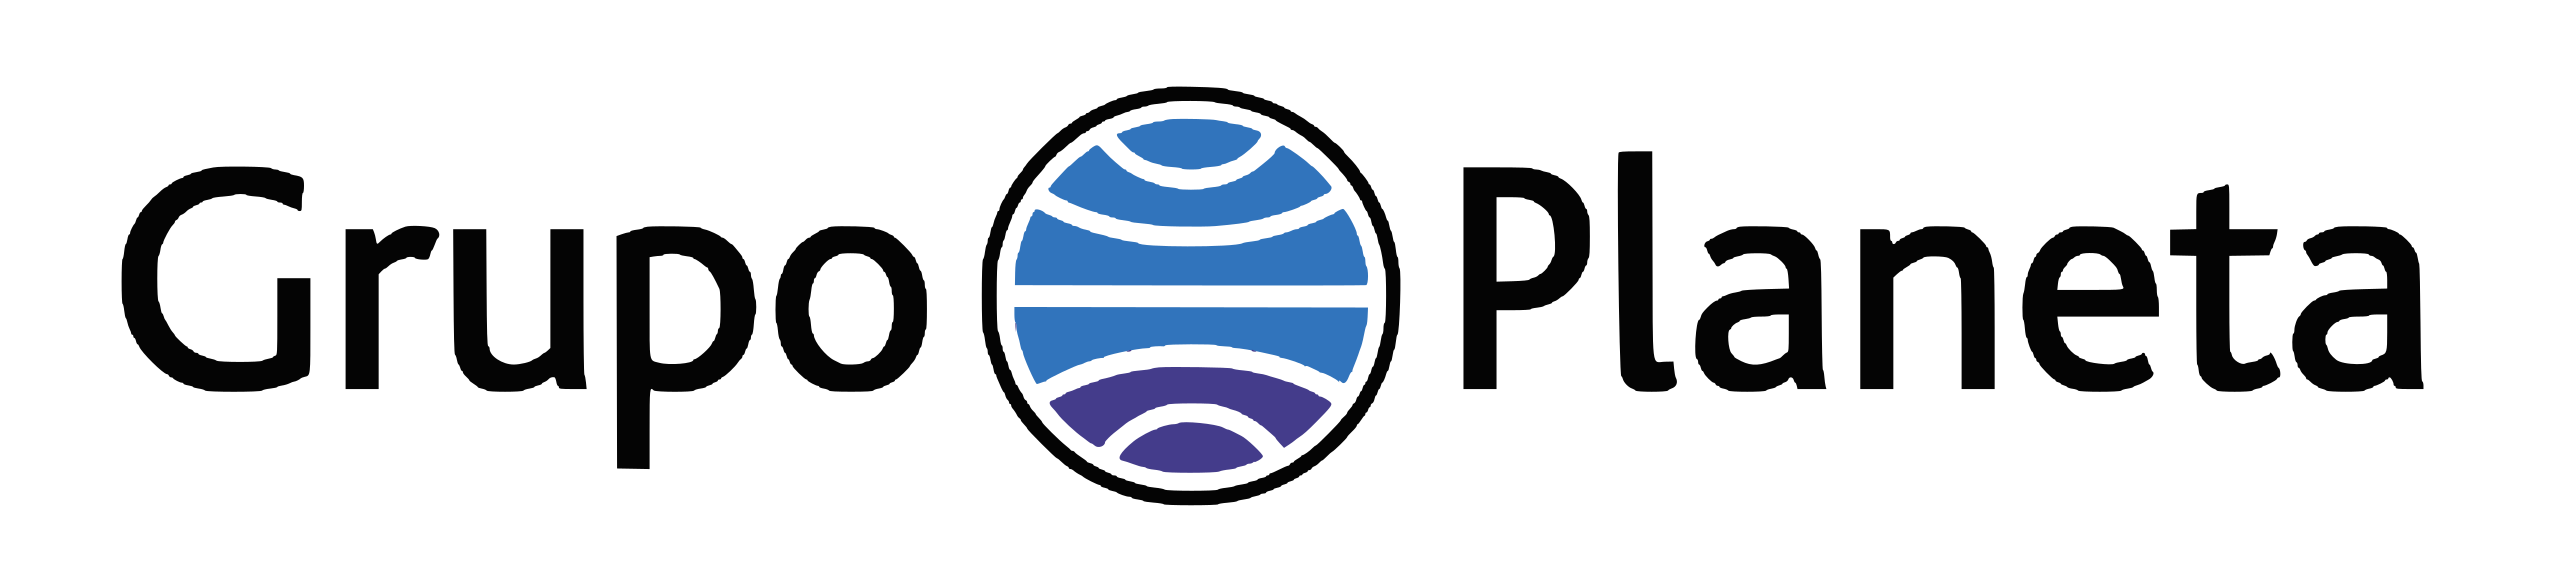 Grupo_Planeta_logo